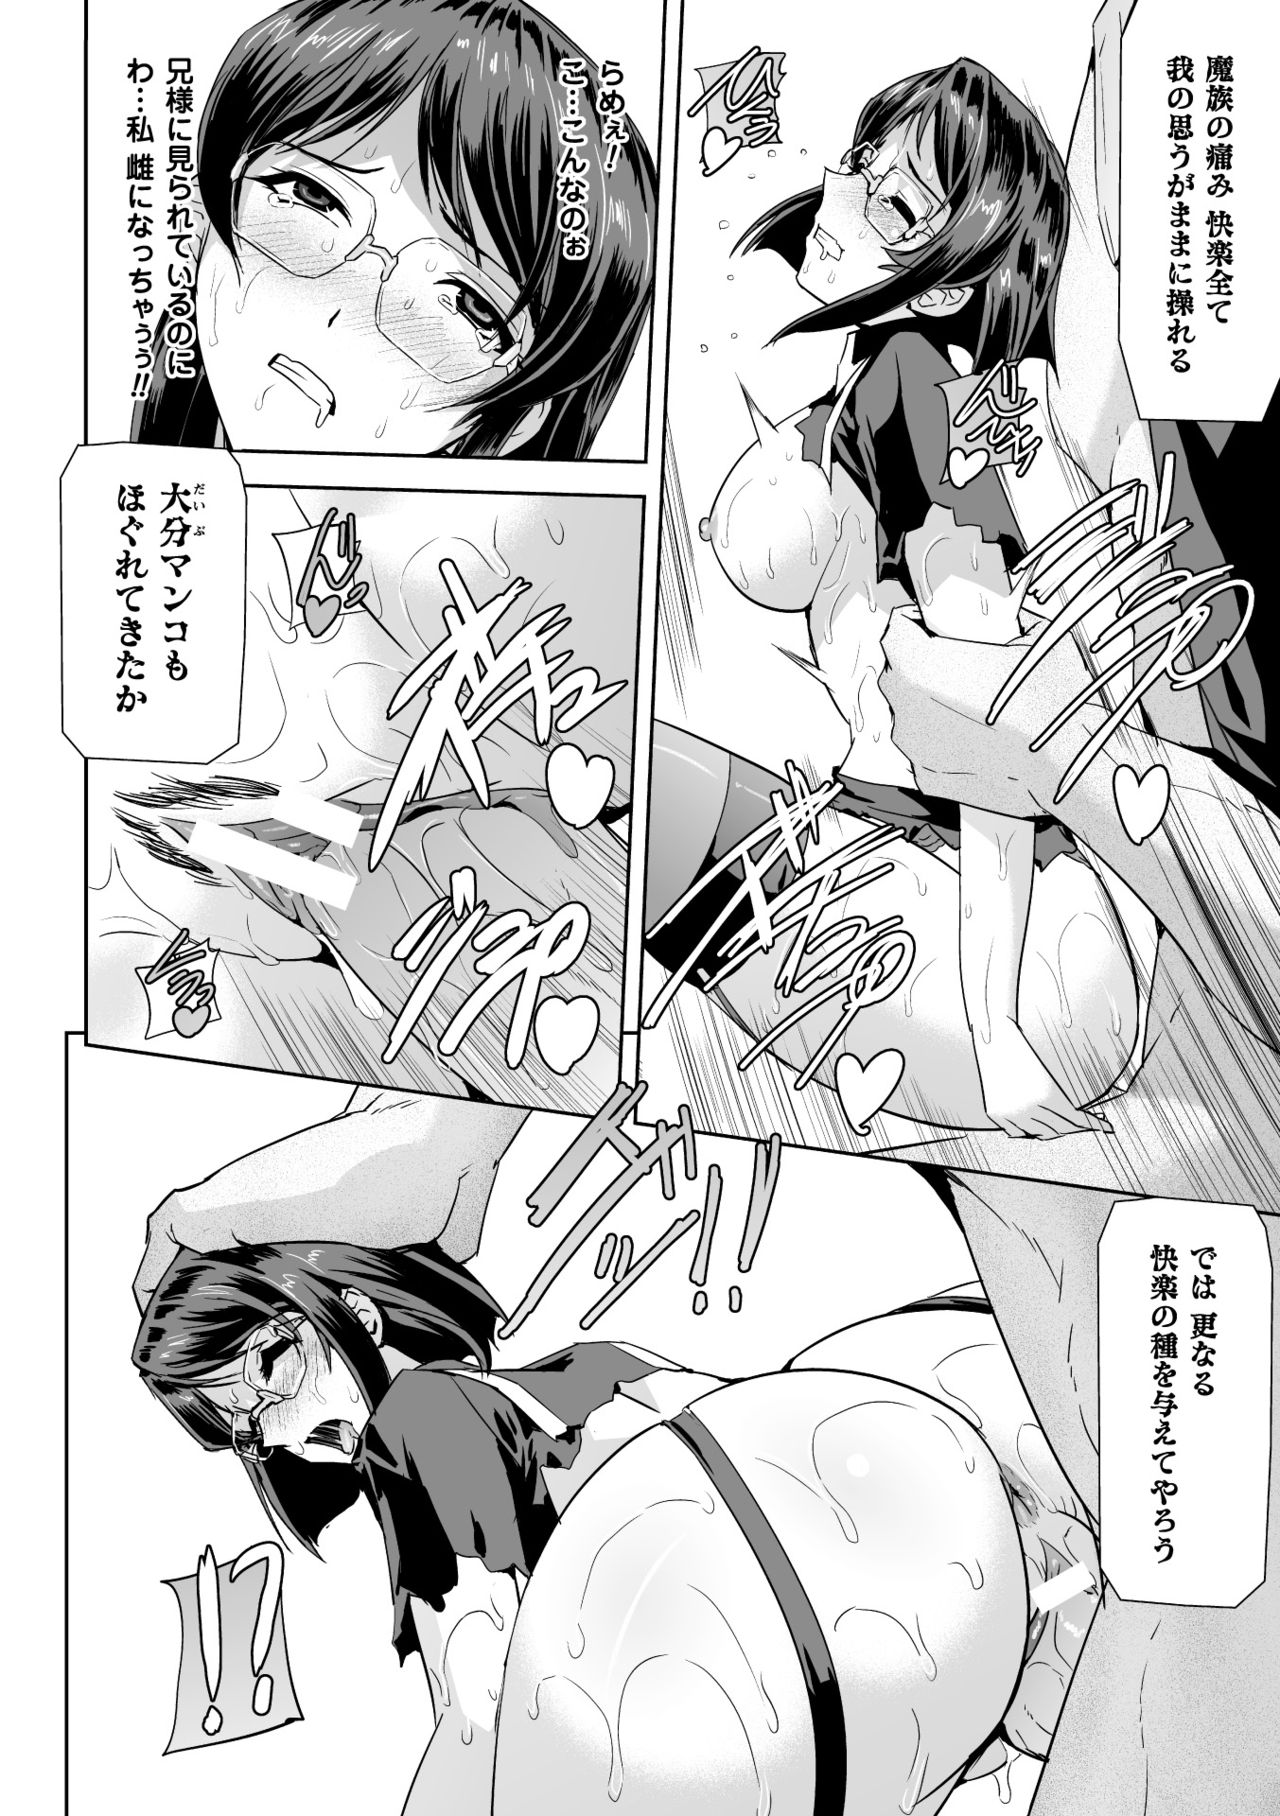 [Anthology] Seigi no Heroine Kangoku File Vol. 2 [Digital] page 26 full